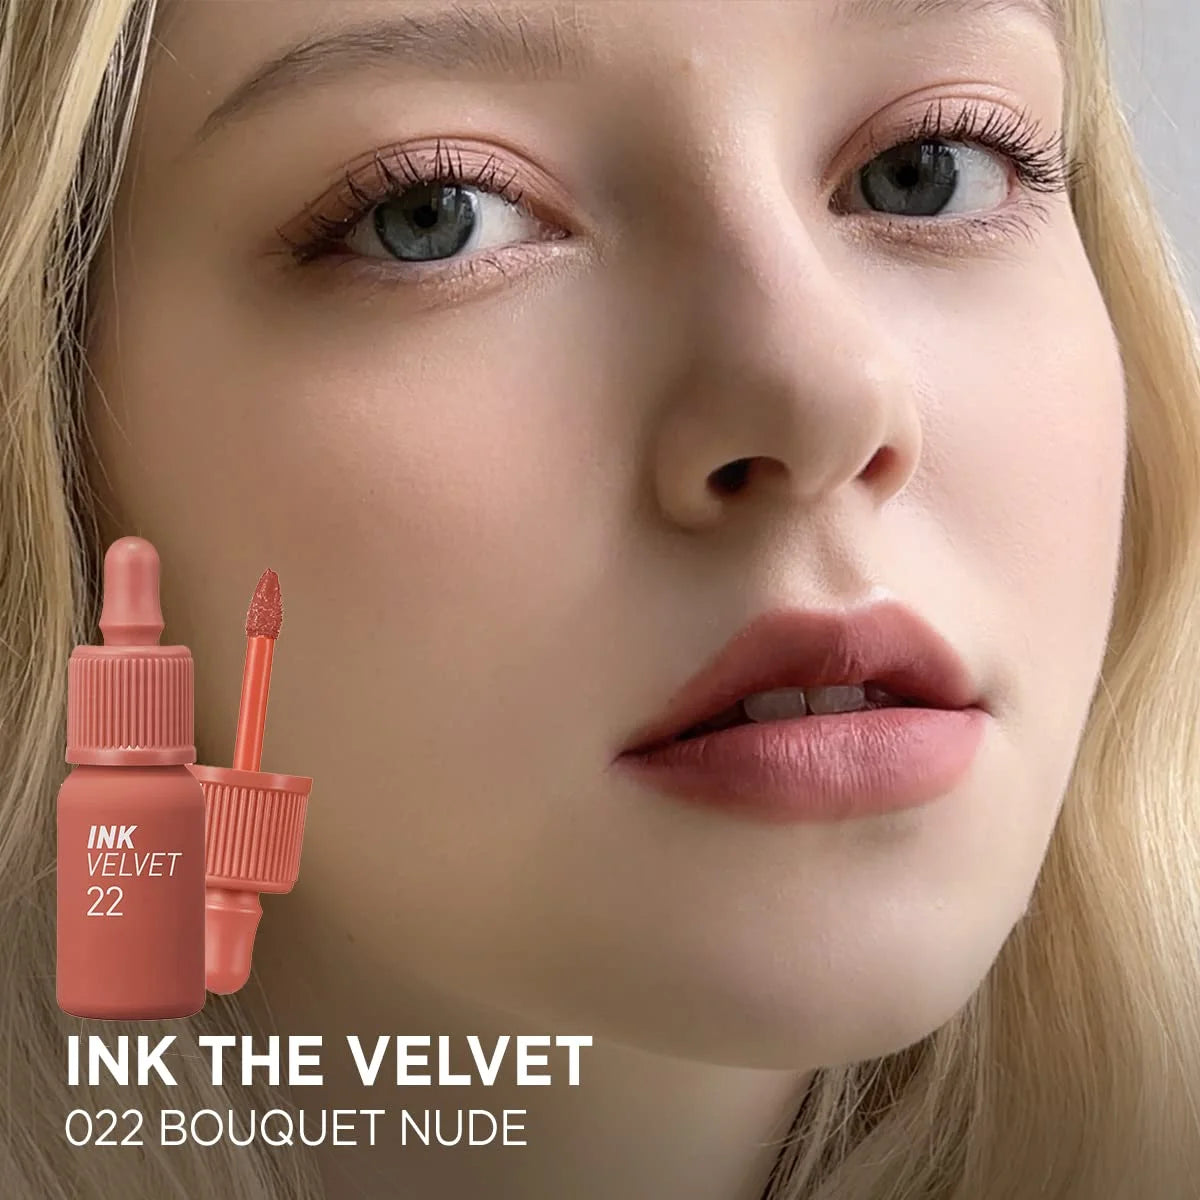 Ink Velvet Lip Tint #22 Bouquet Nude